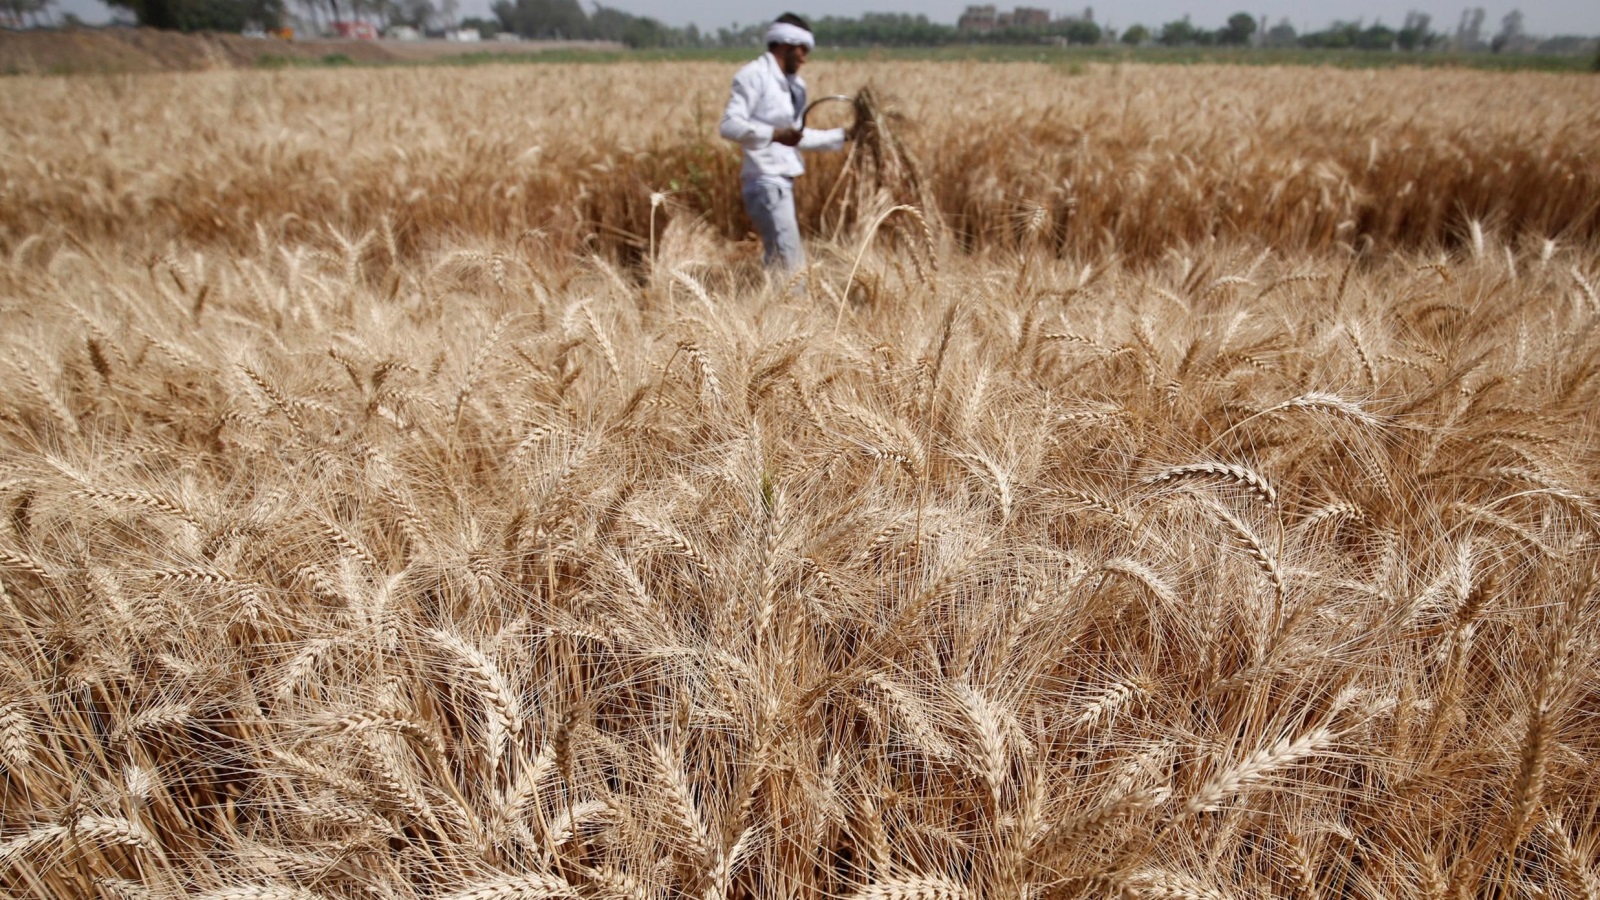 ‪القطاع الزراعي يساهم بأكثر من 11% في الاقتصاد المصري‬ القطاع الزراعي يساهم بأكثر من 11% في الاقتصاد المصري (رويترز-أرشيف)